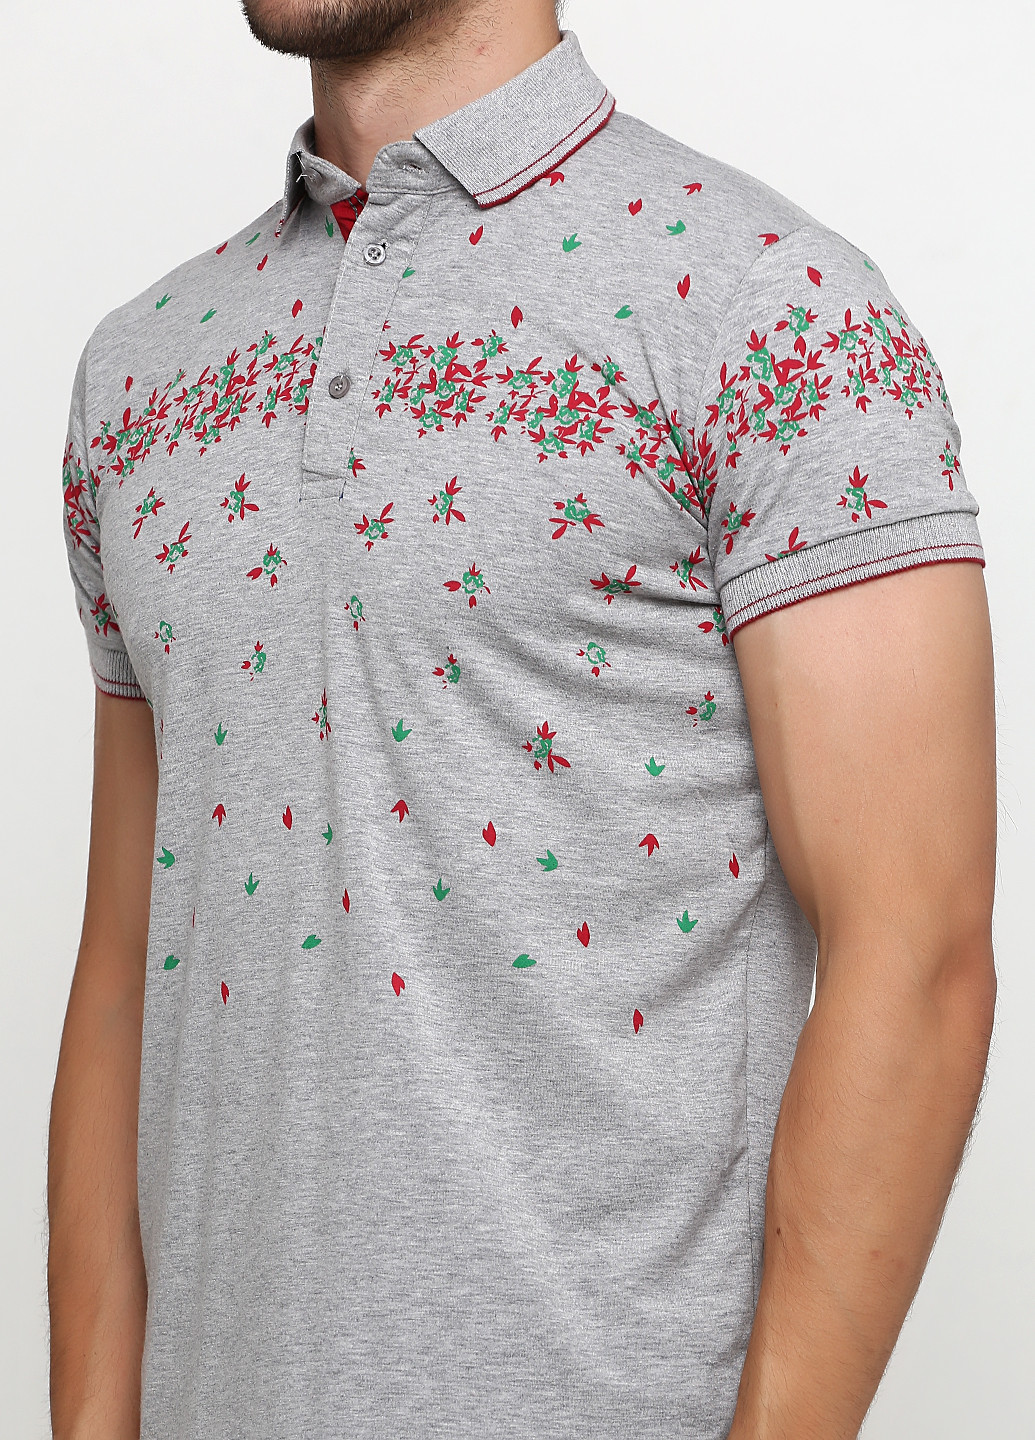 Серая футболка-поло для мужчин Golf с цветочным принтом